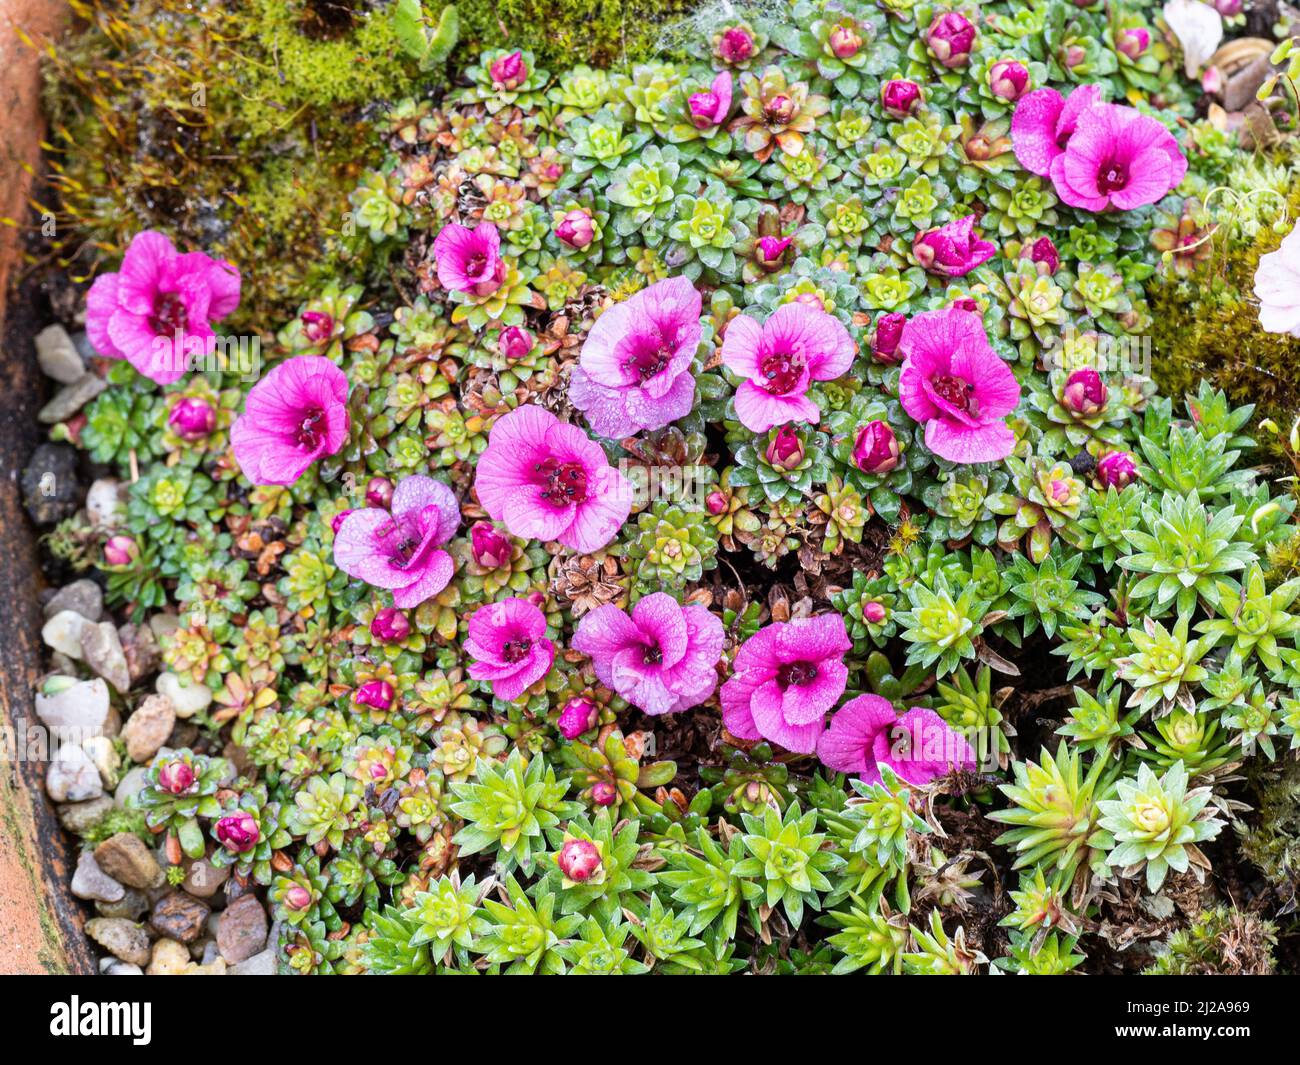 Ein verkrusteter Hügel der früh blühenden Kabschia Saxifraga Beatles, der die zarten, tiefrosa Blüten zeigt Stockfoto